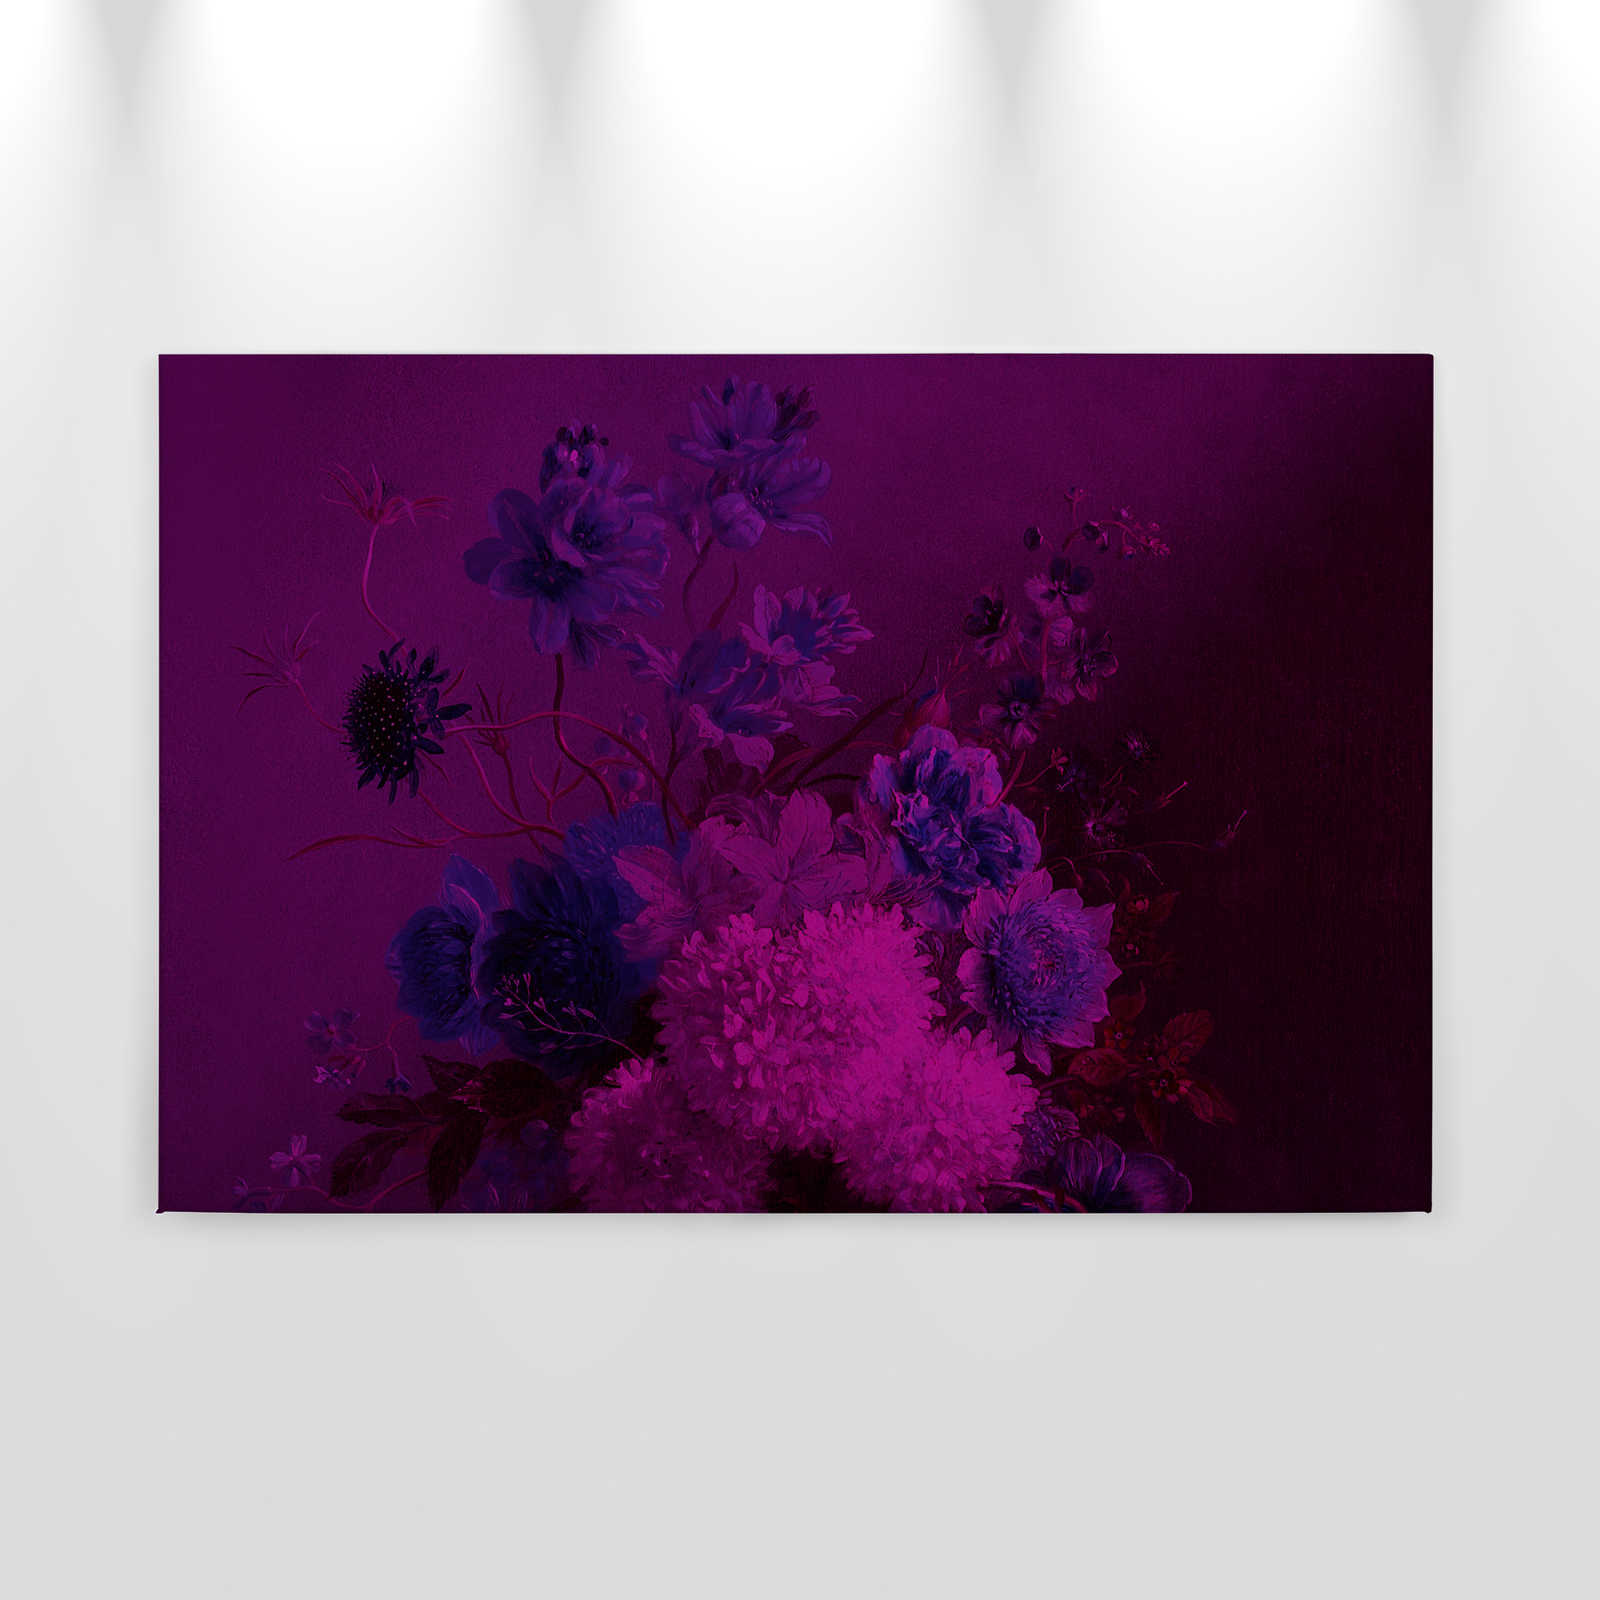             Pittura su tela al neon con fiori Natura morta | bouquet Vibran 3 - 0,90 m x 0,60 m
        